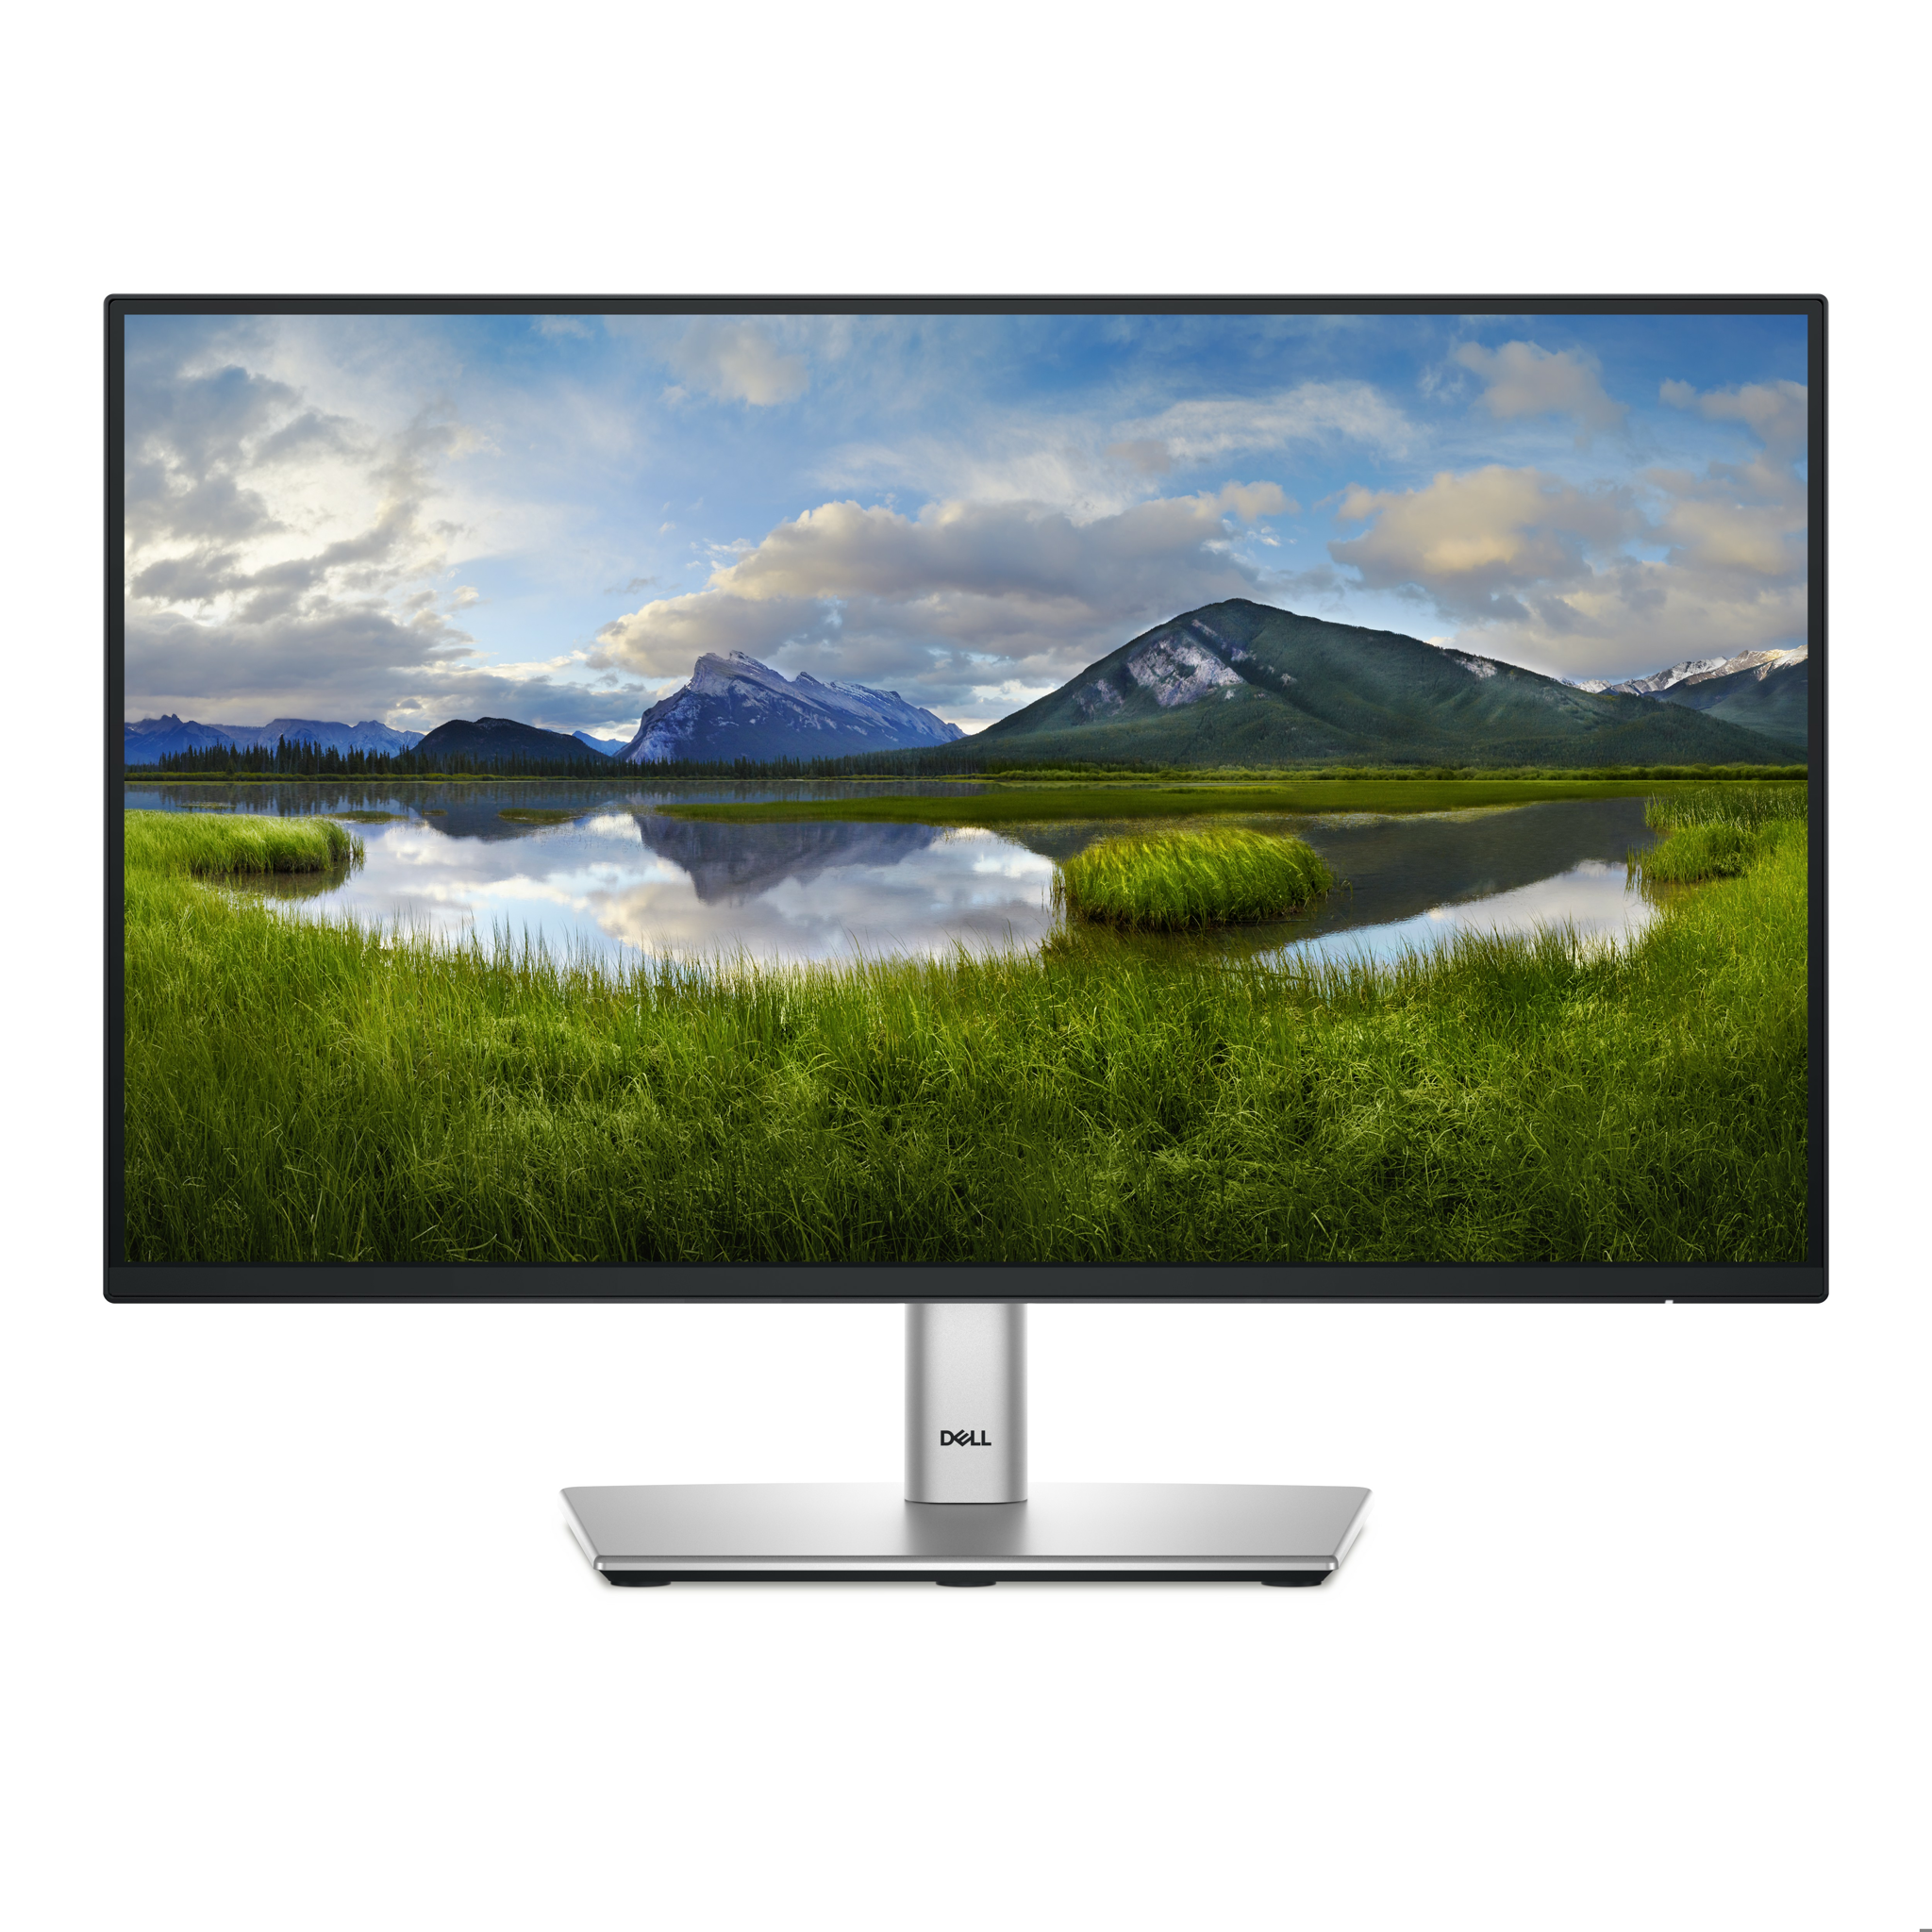 Bild von Dell P Series P2225H, 54,6 cm (21.5"), 1920 x 1080 Pixel, Full HD, LCD, 8 ms, Schwarz, Silber